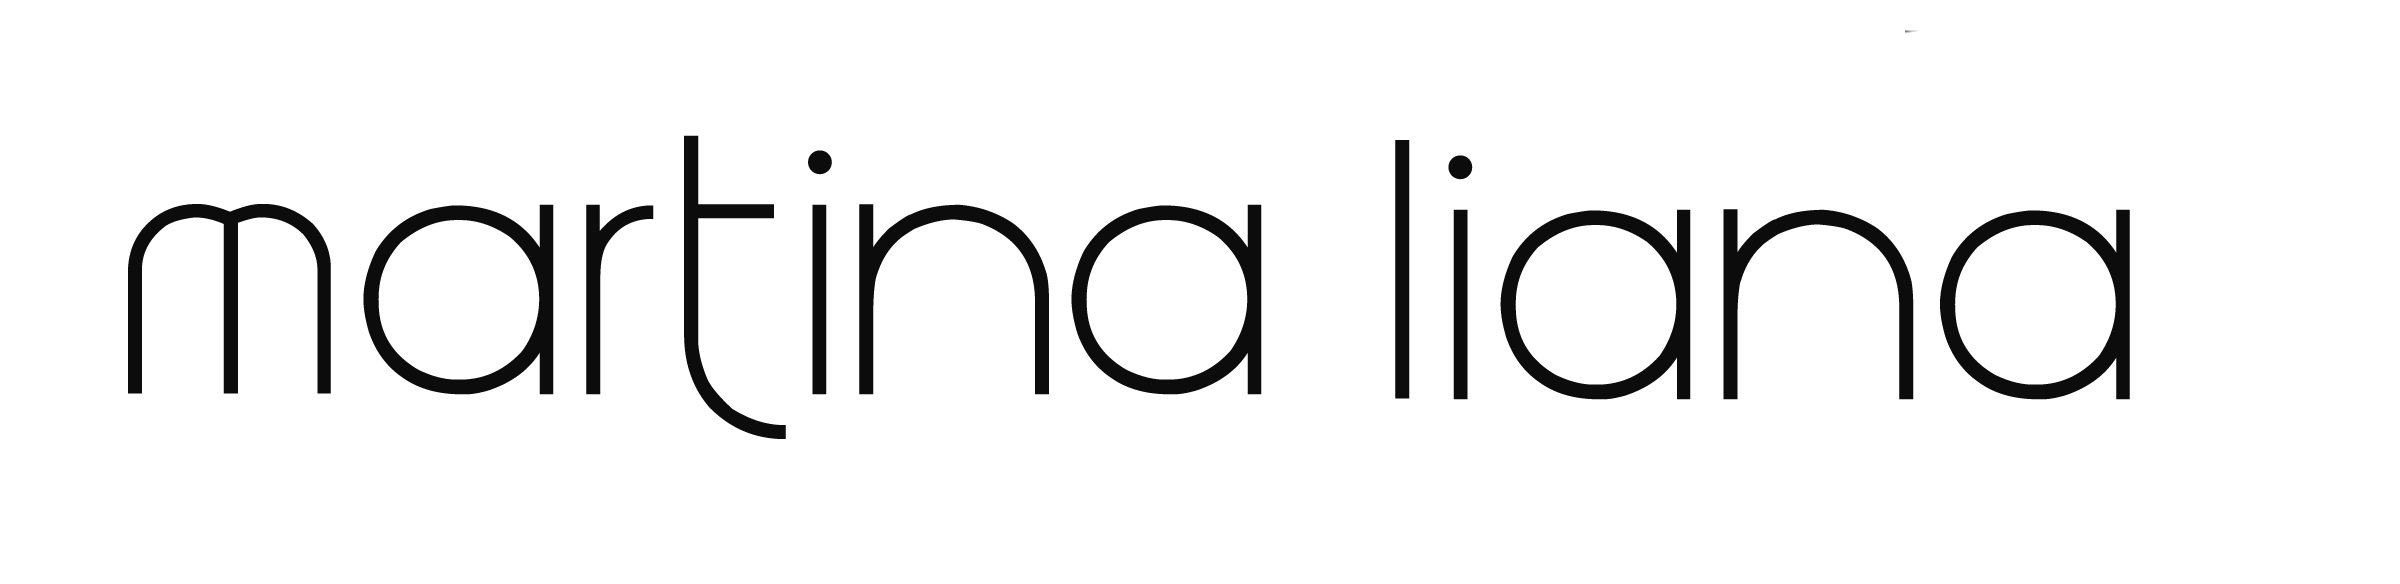 Martina-Liana-logo